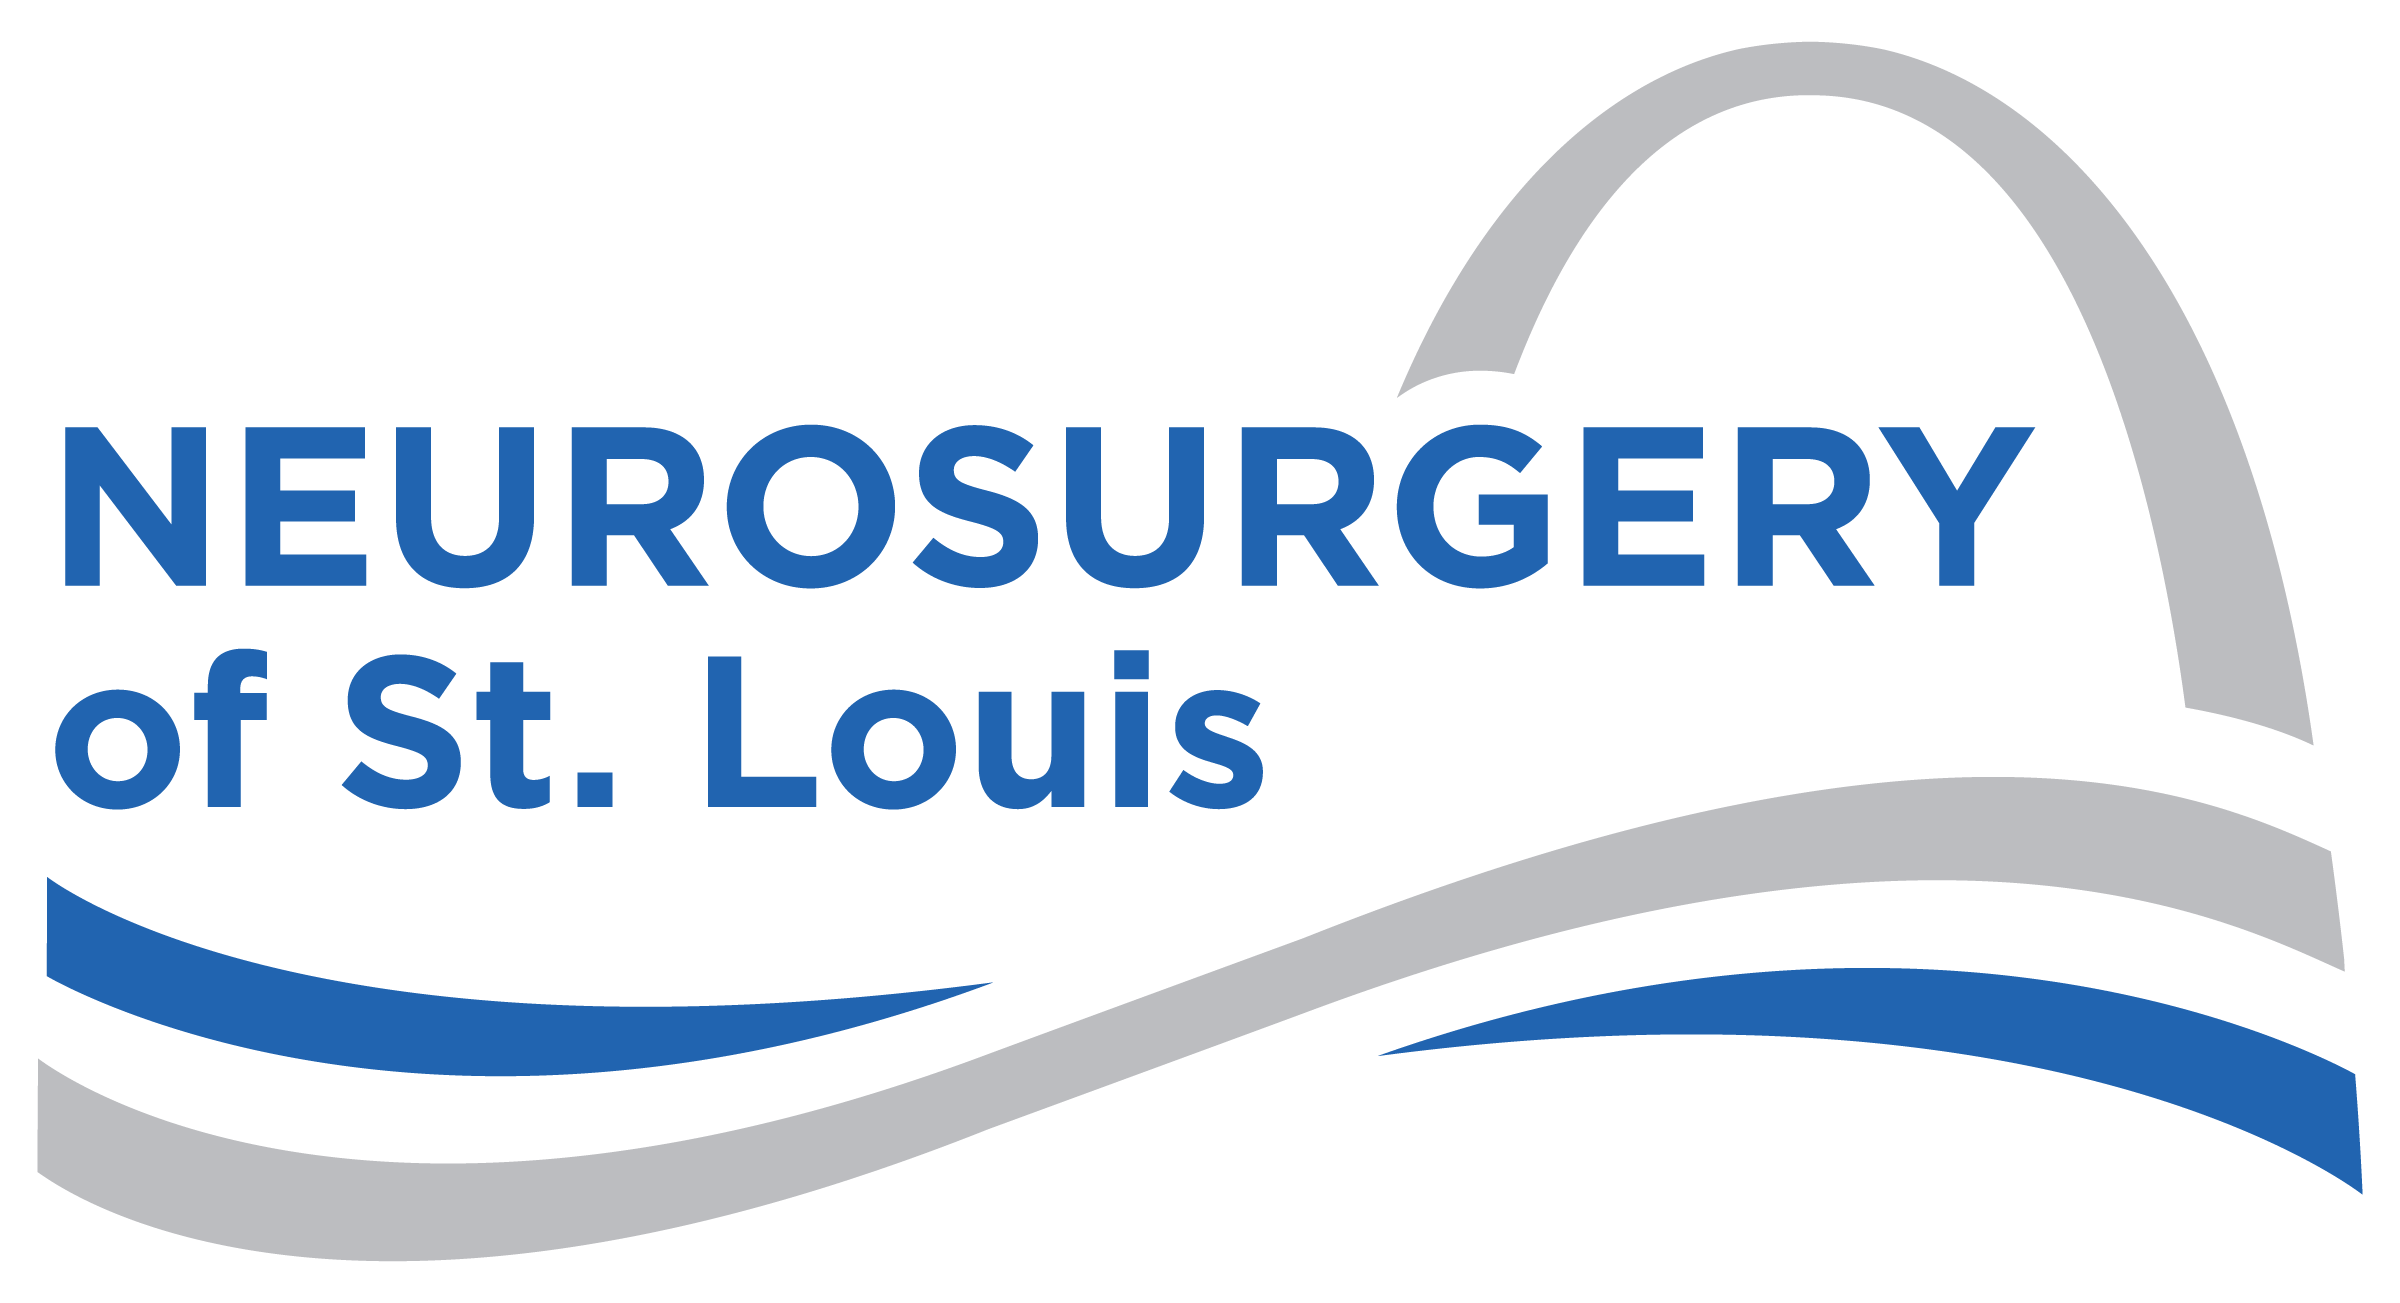 neurology of st louis logo